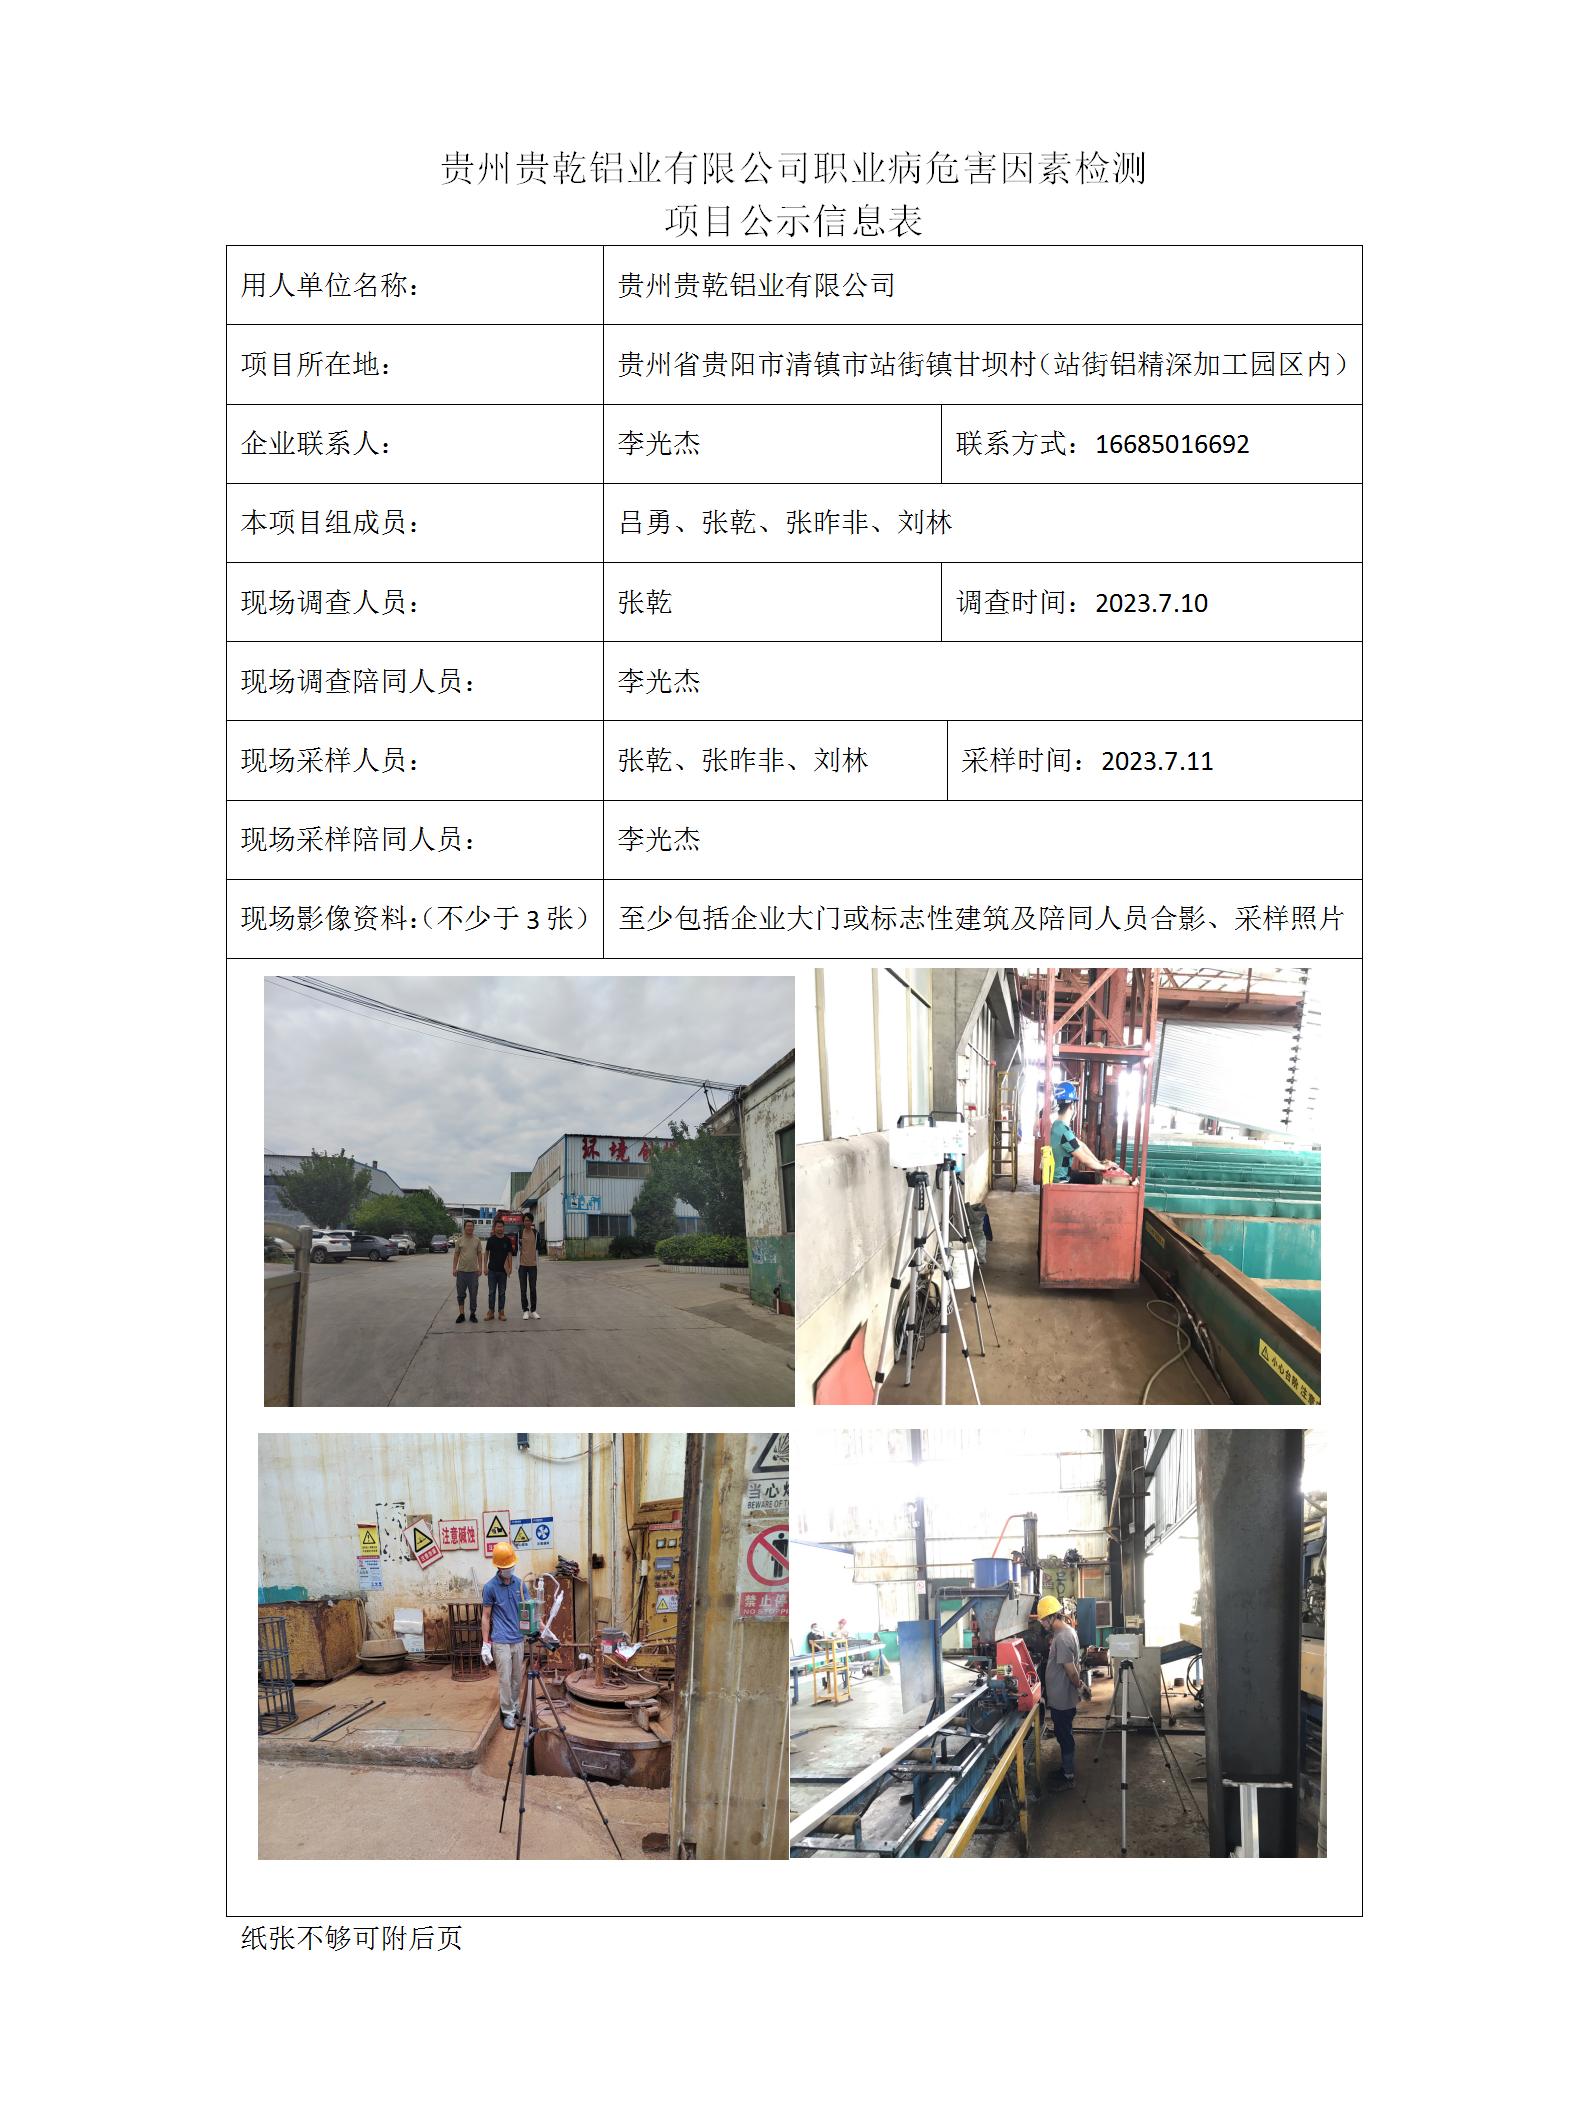 贵州贵乾铝业有限公司-项目公示信息表（ 张乾）_01.jpg